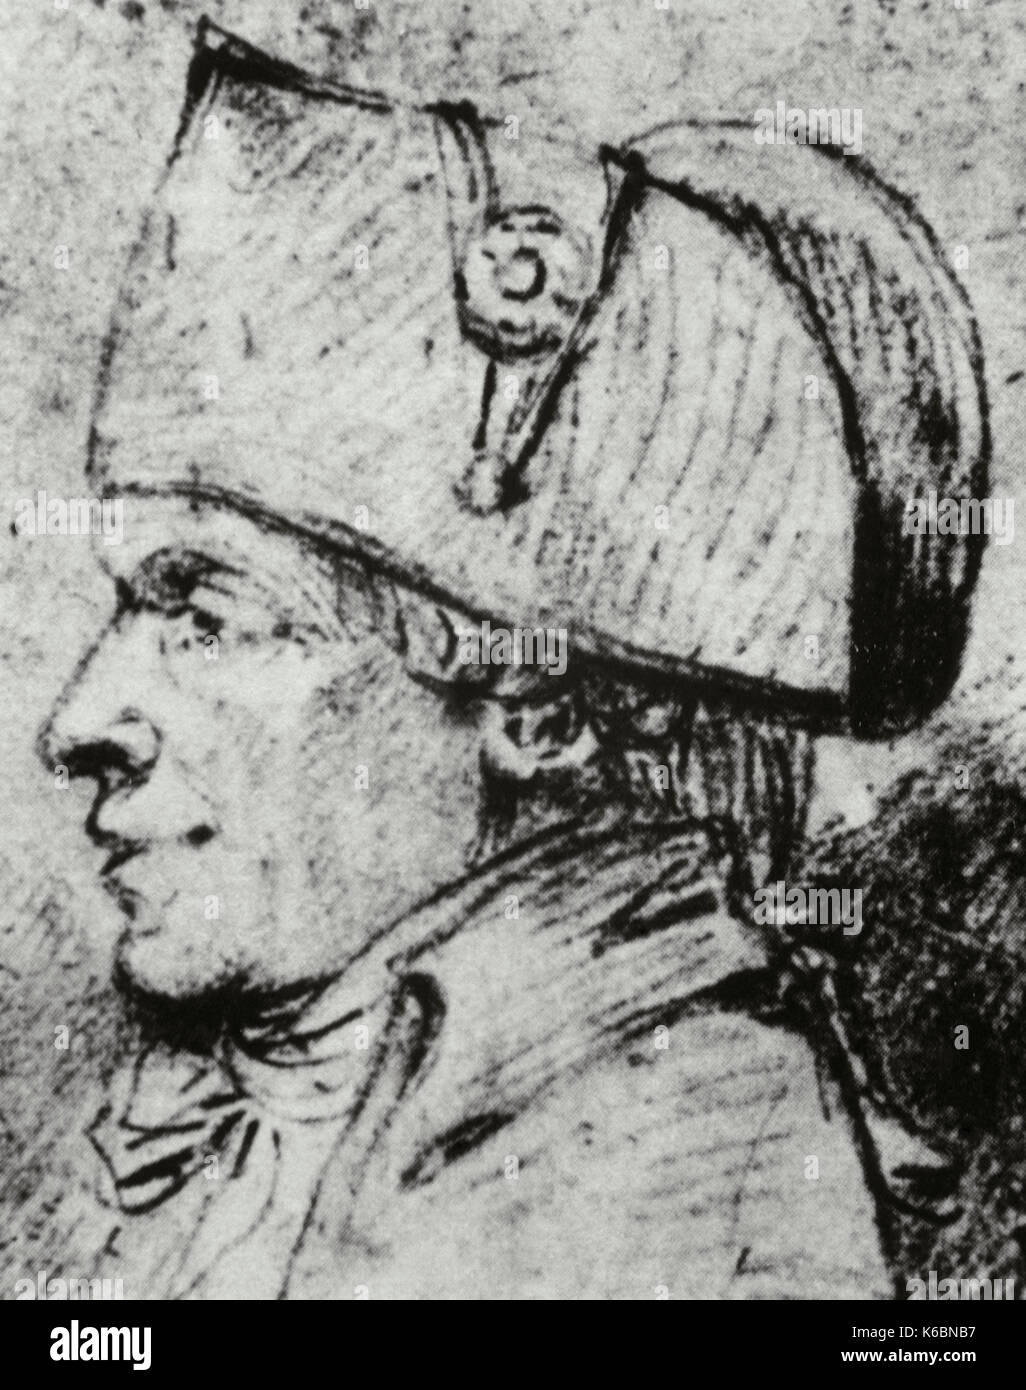 Jacques pierre brissot de warville (1754 - 1793). politico francese membro del movimento girondist. disegno, XVIII secolo. Foto Stock